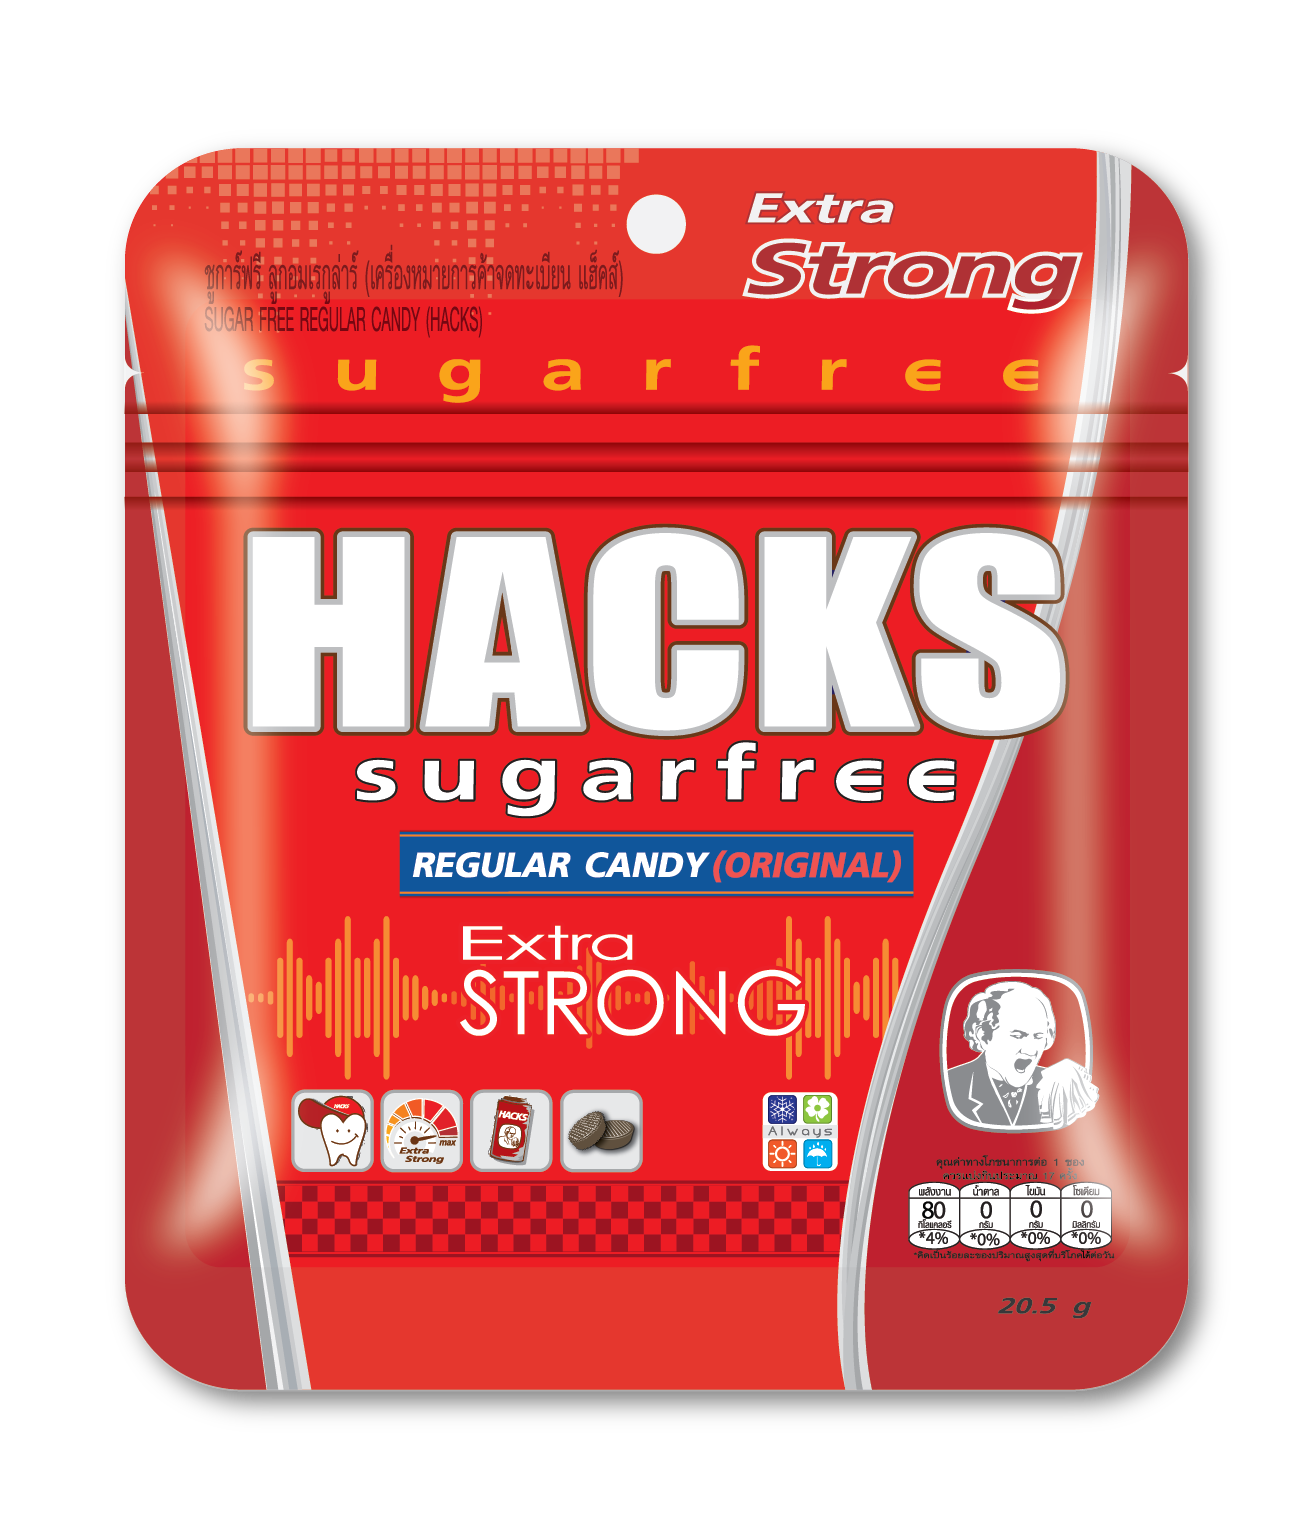 ลูกอม Hacks Sugar free รส Regular (original) Extra Strong ขนาด 20.5 g.